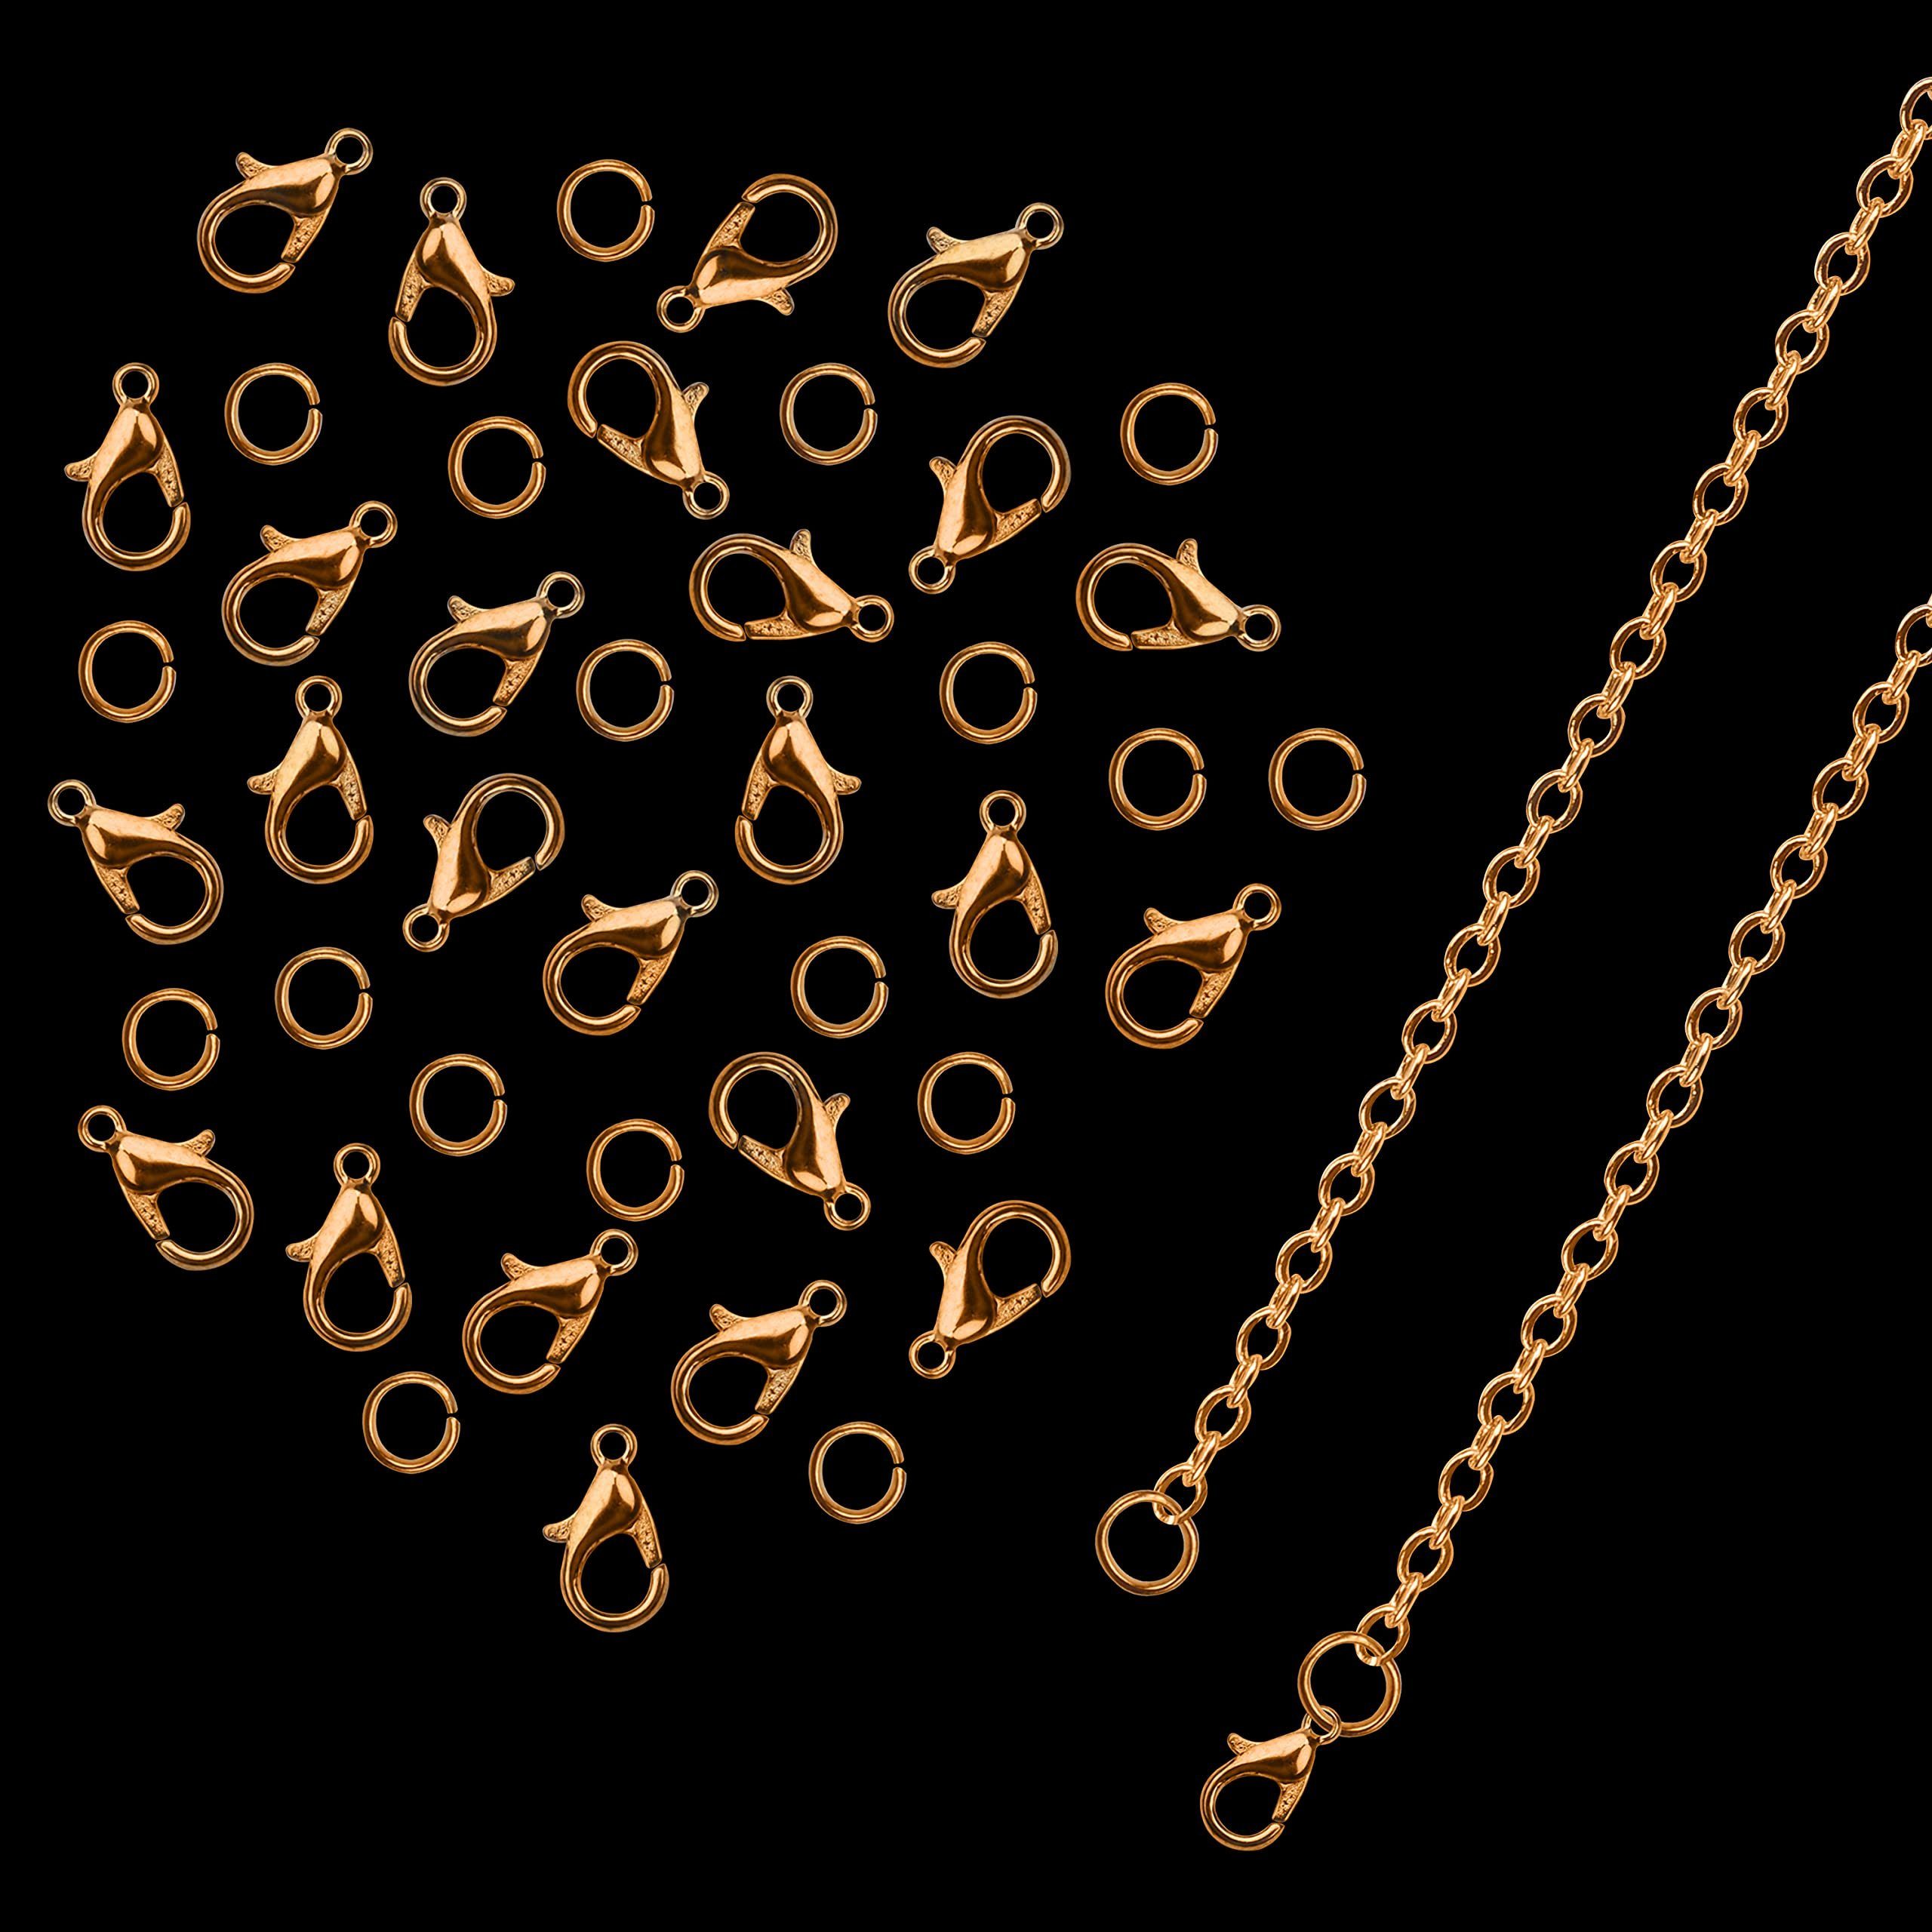 Gold Kit Chain - 1.5mm DIY Rundstahlkette 10m 10m x Goldkettenset x Edelstahl, DIY Chain - Eisenkette, Kurtzy 1.5mm Iron